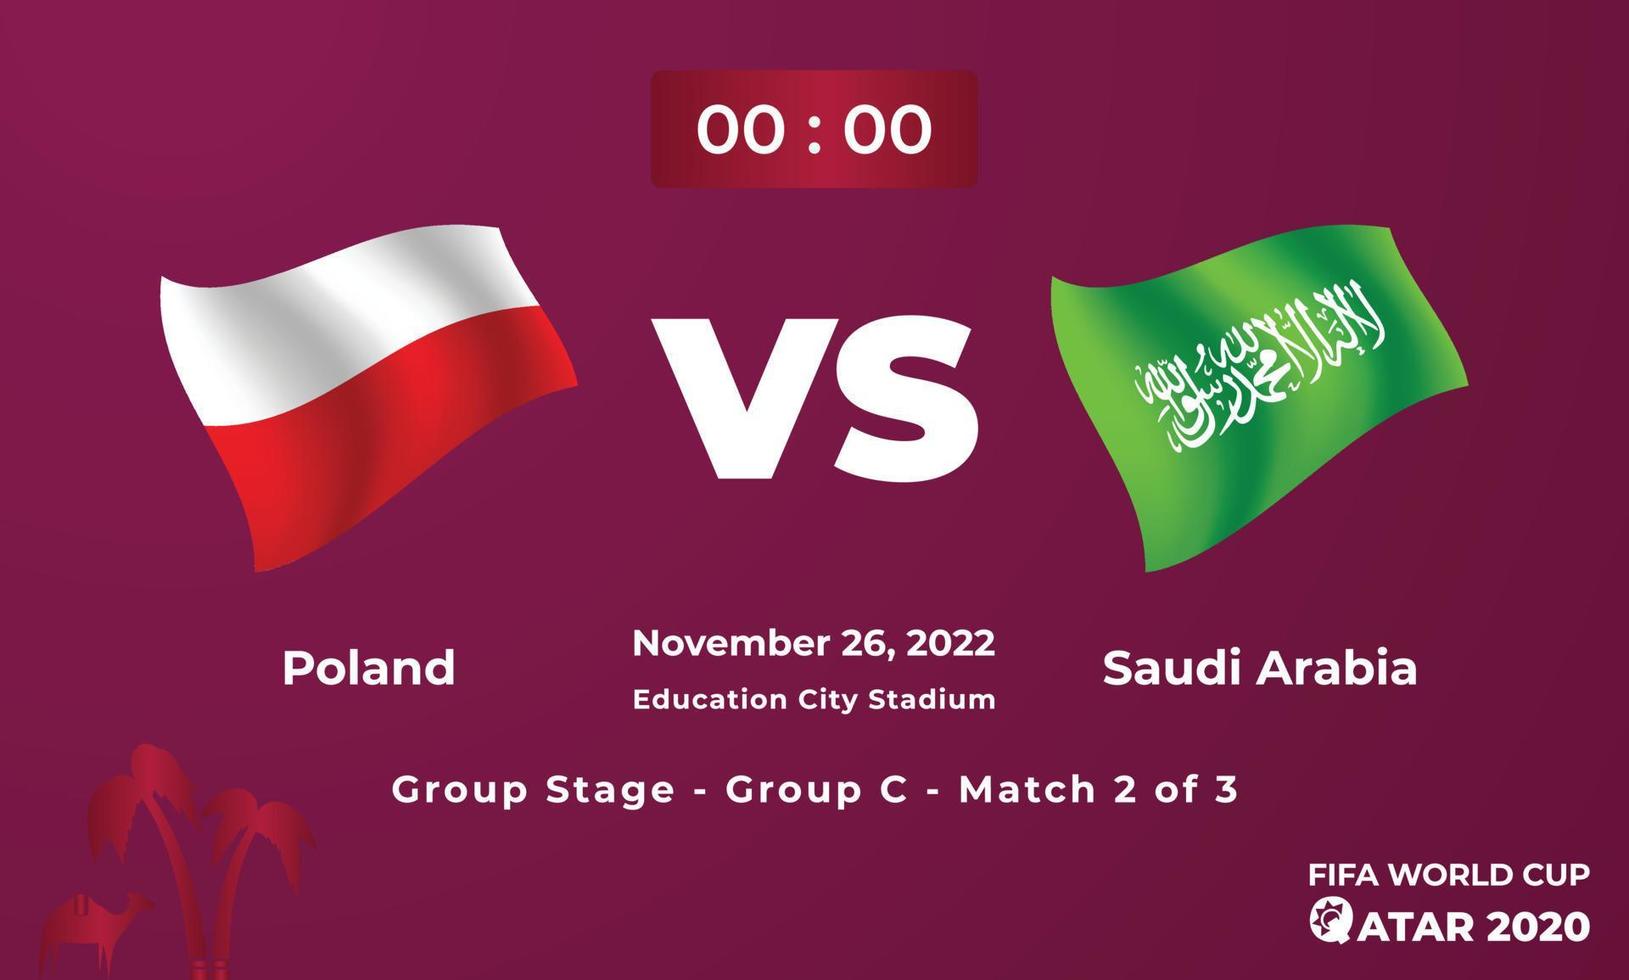 plantilla de partido de fútbol de polonia vs arabia saudita, copa mundial de la fifa en qatar 2022 vector